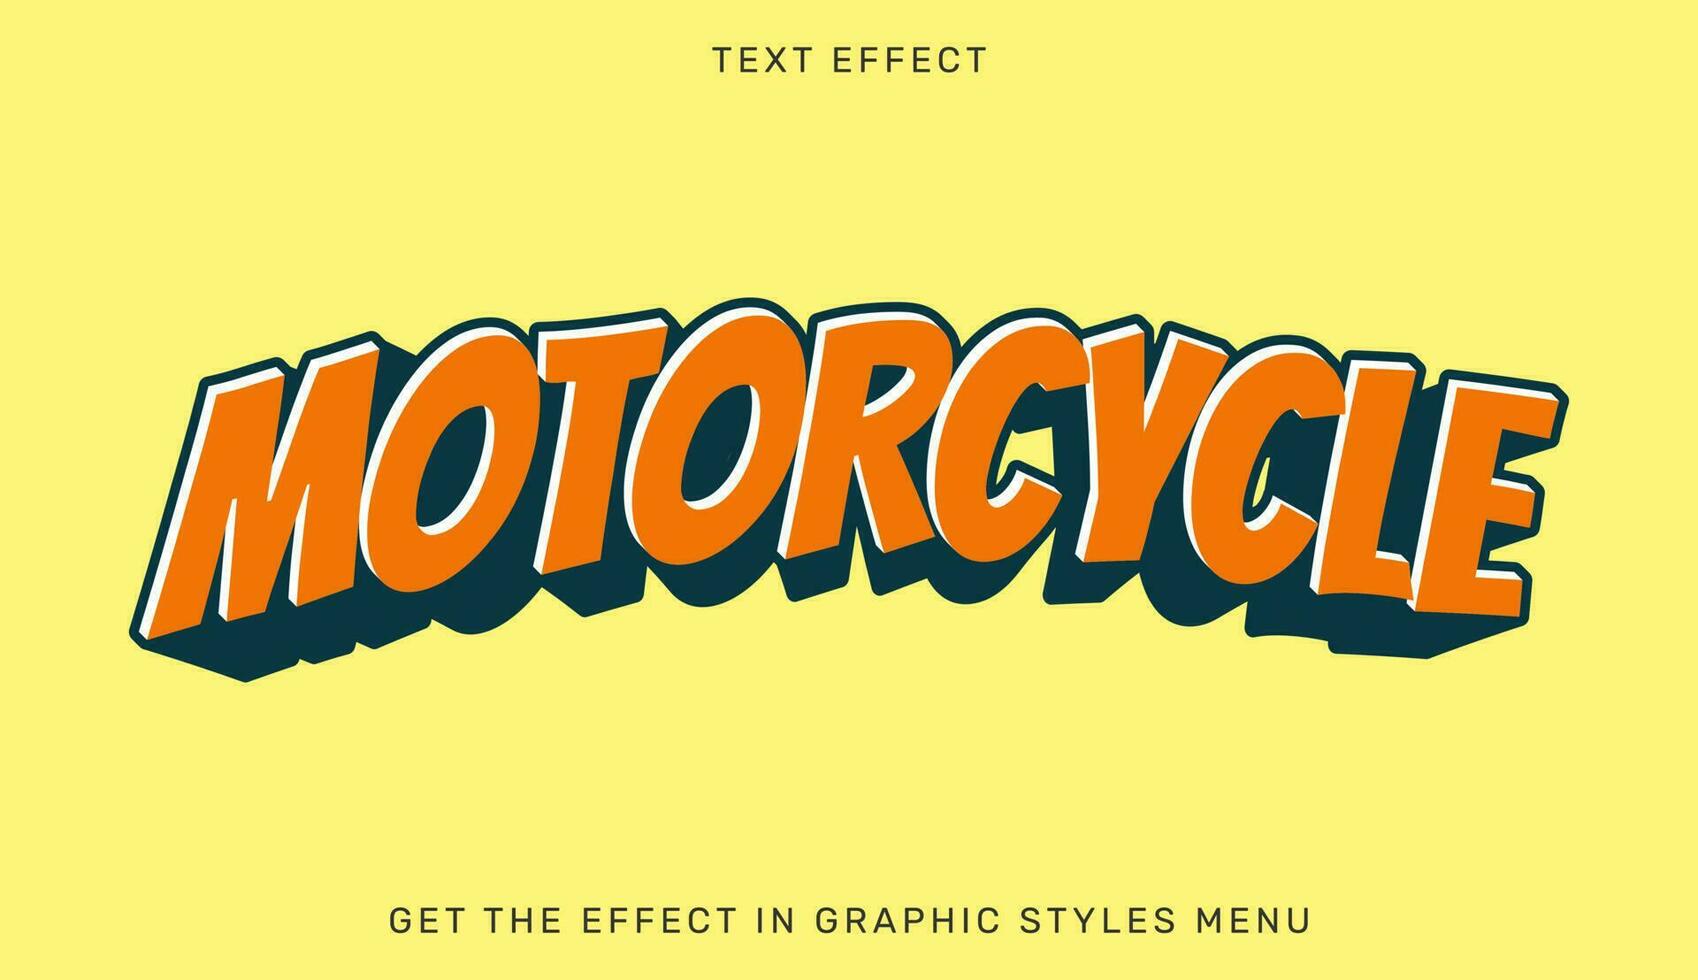 vector illustratie van motorfiets tekst effect